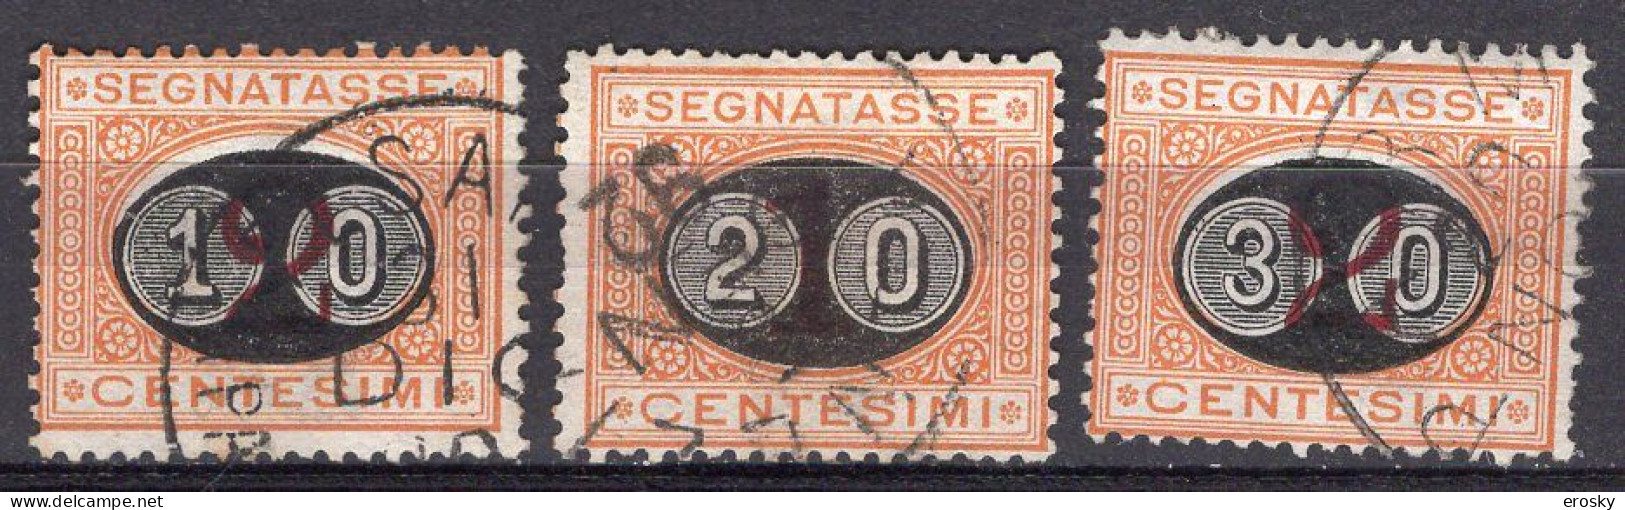 Z6141 - ITALIA REGNO TASSE SASSONE N°17/19 - Segnatasse